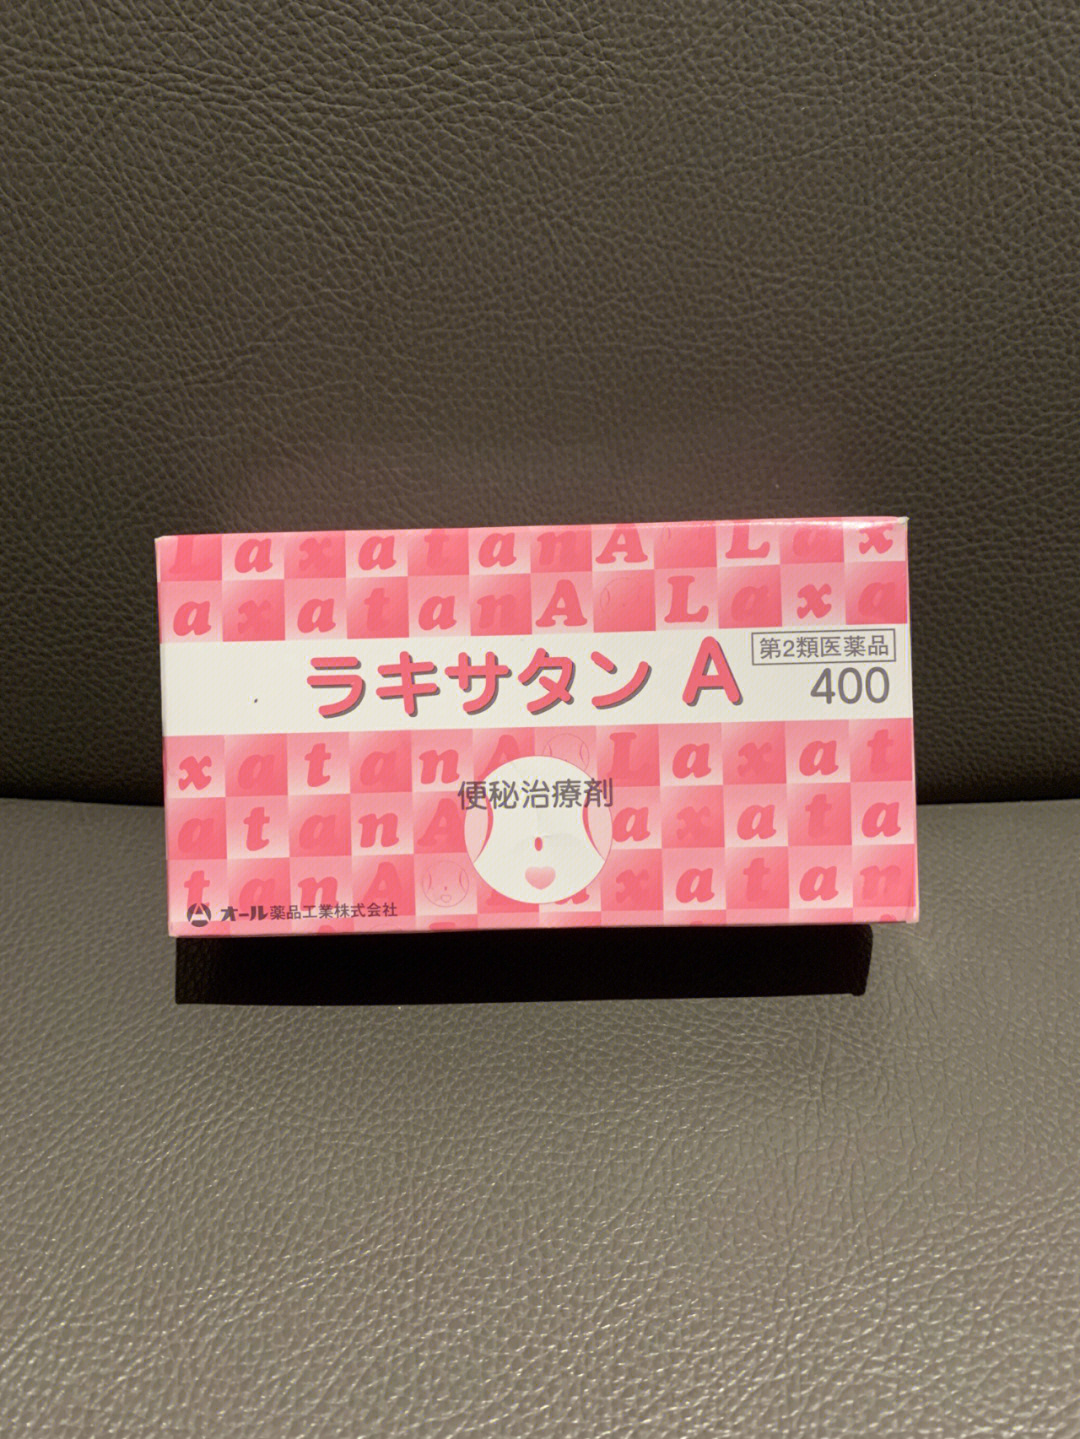 日本粉色便秘丸说明书图片